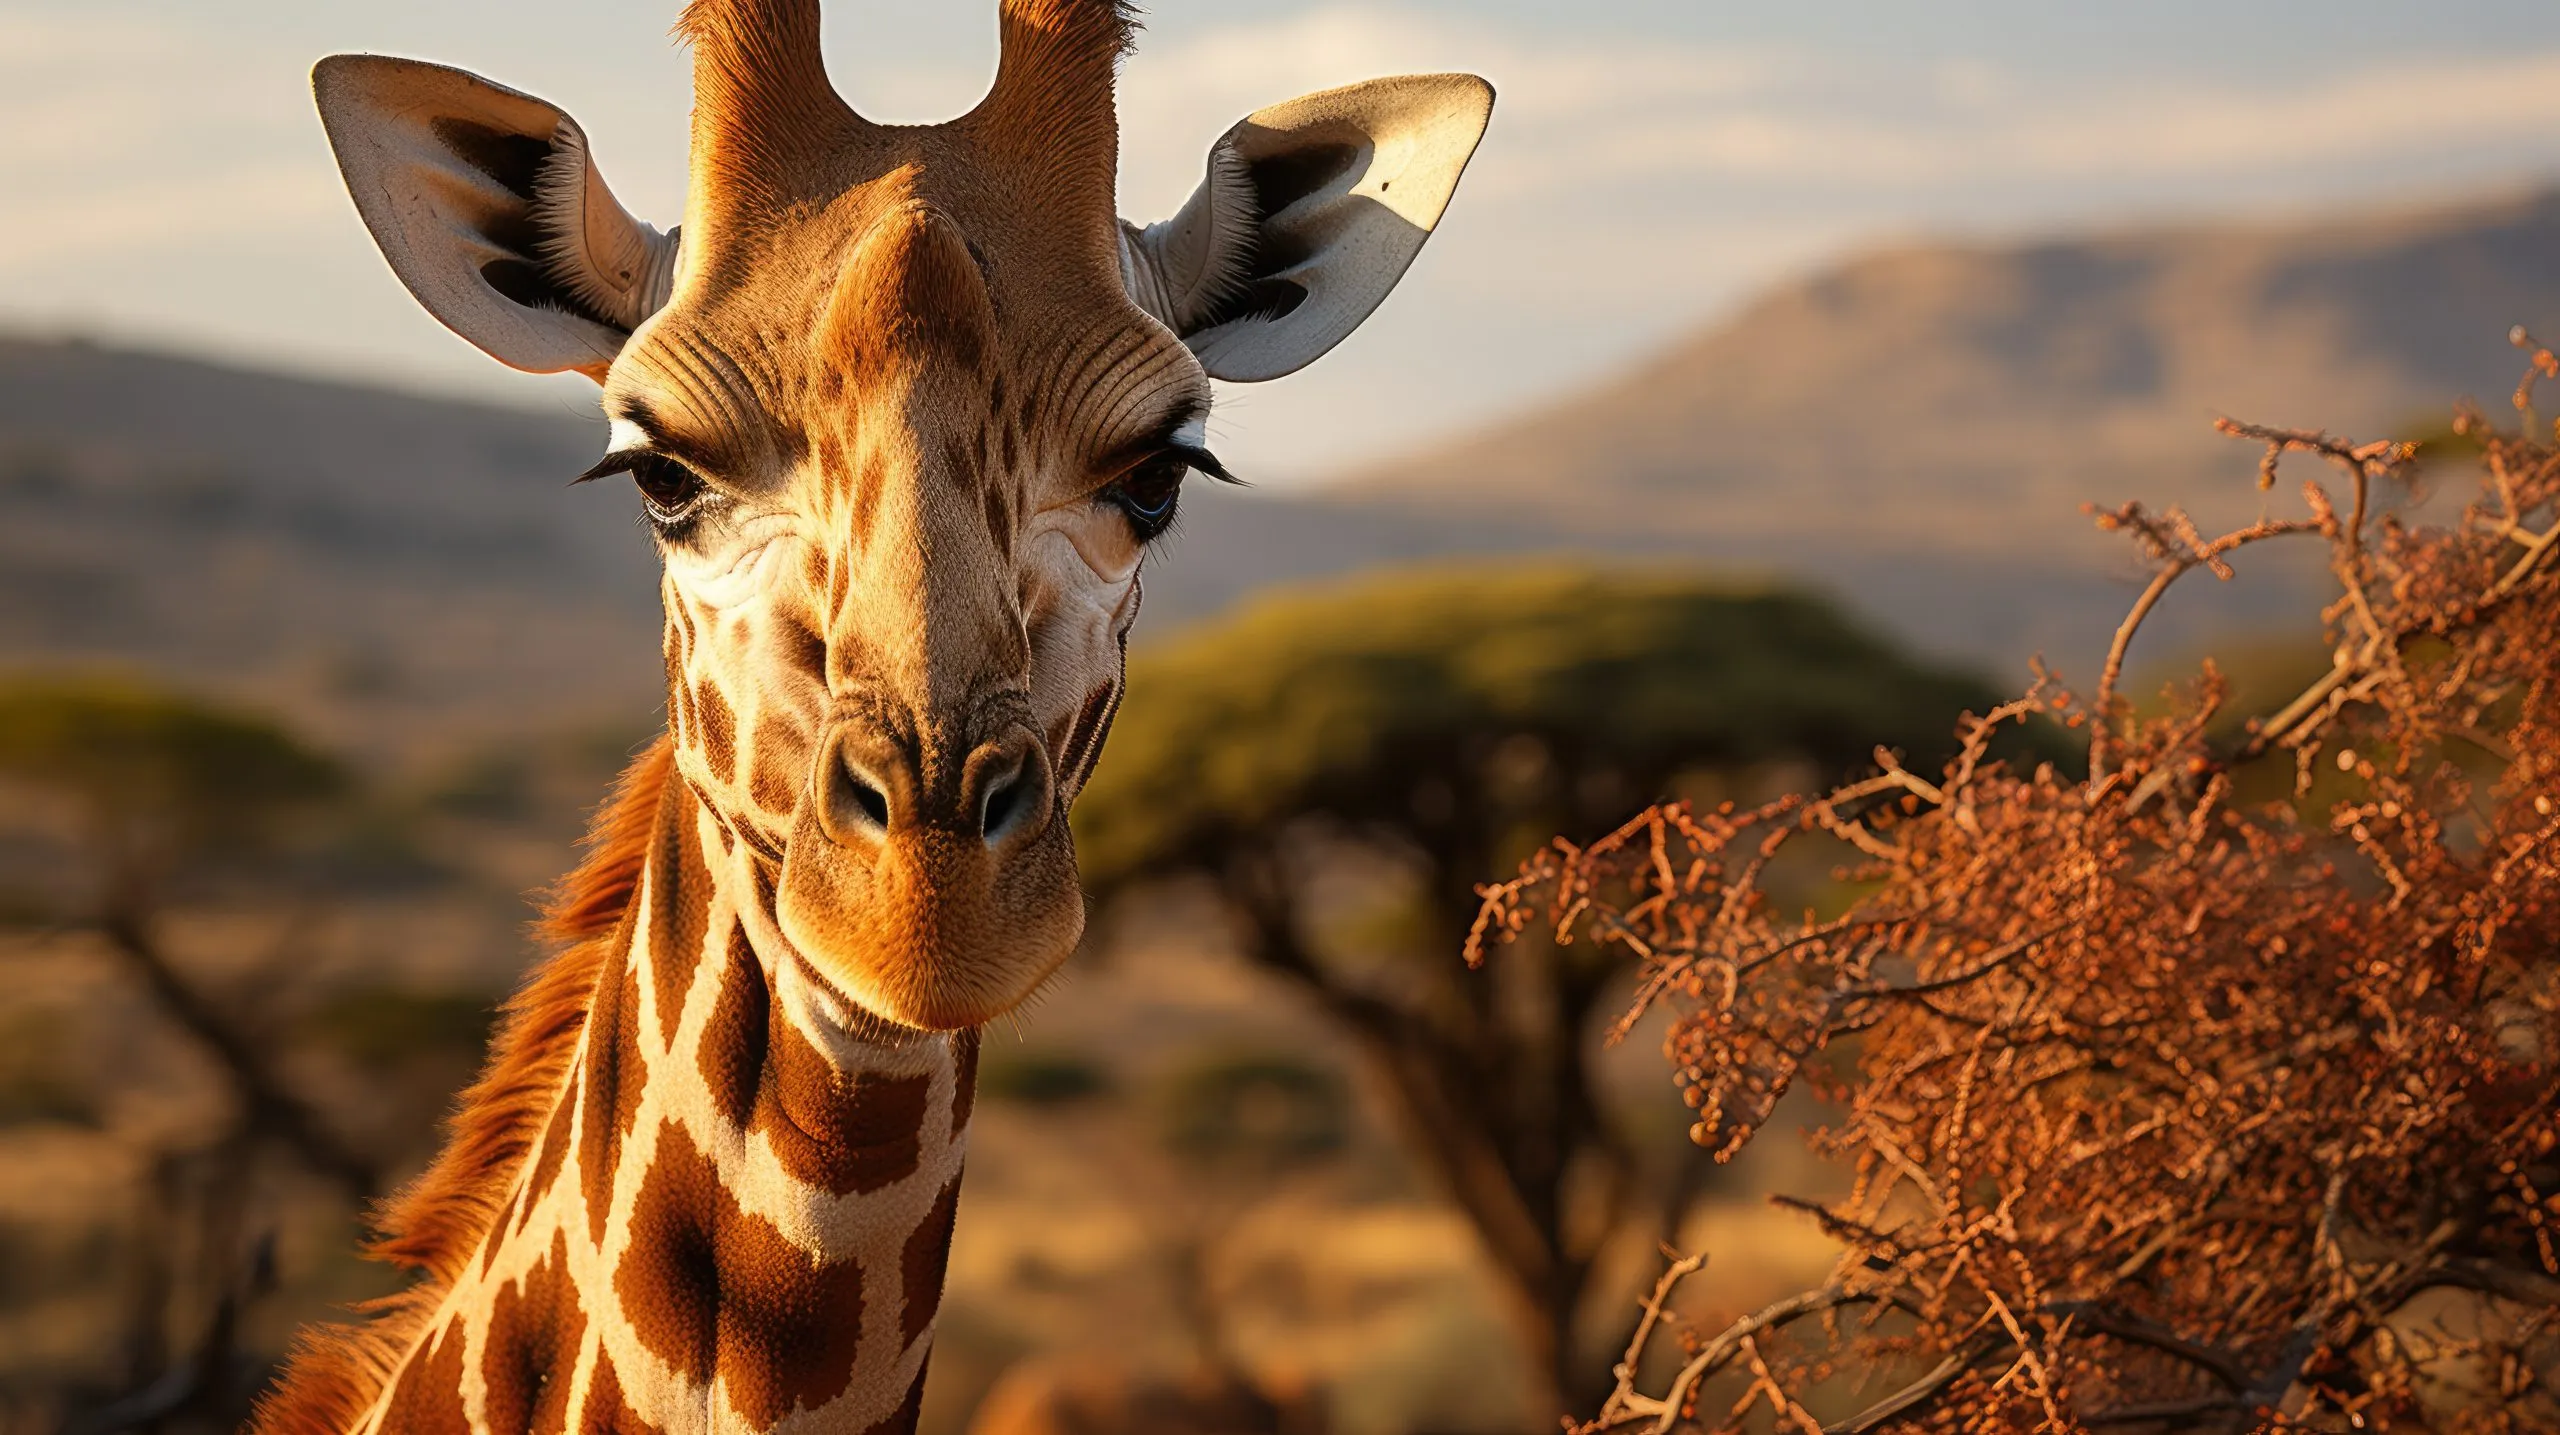 Una jirafa reticulada (Giraffa camelopardalis reticulata) pastando en las ramas superiores de una acacia en la Reserva Nacional Samburu de Kenia, con su largo cuello y su pelaje estampado destacando en el paisaje africano.